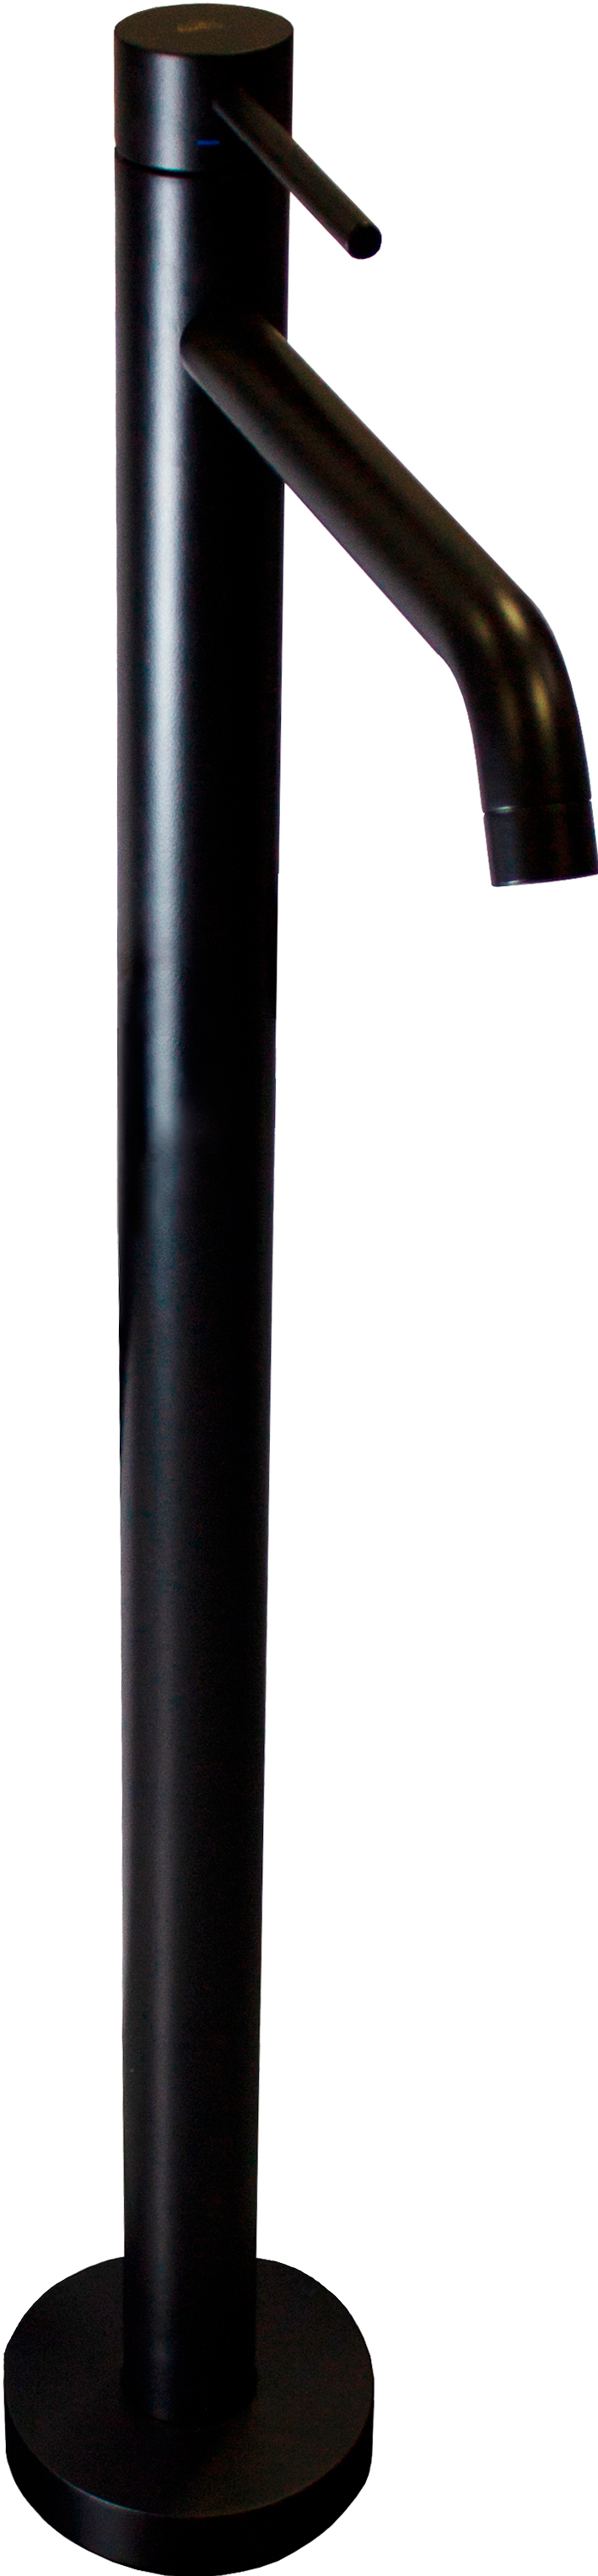 Смеситель Paffoni Light LIG031NO для раковины, напольный, черный матовый